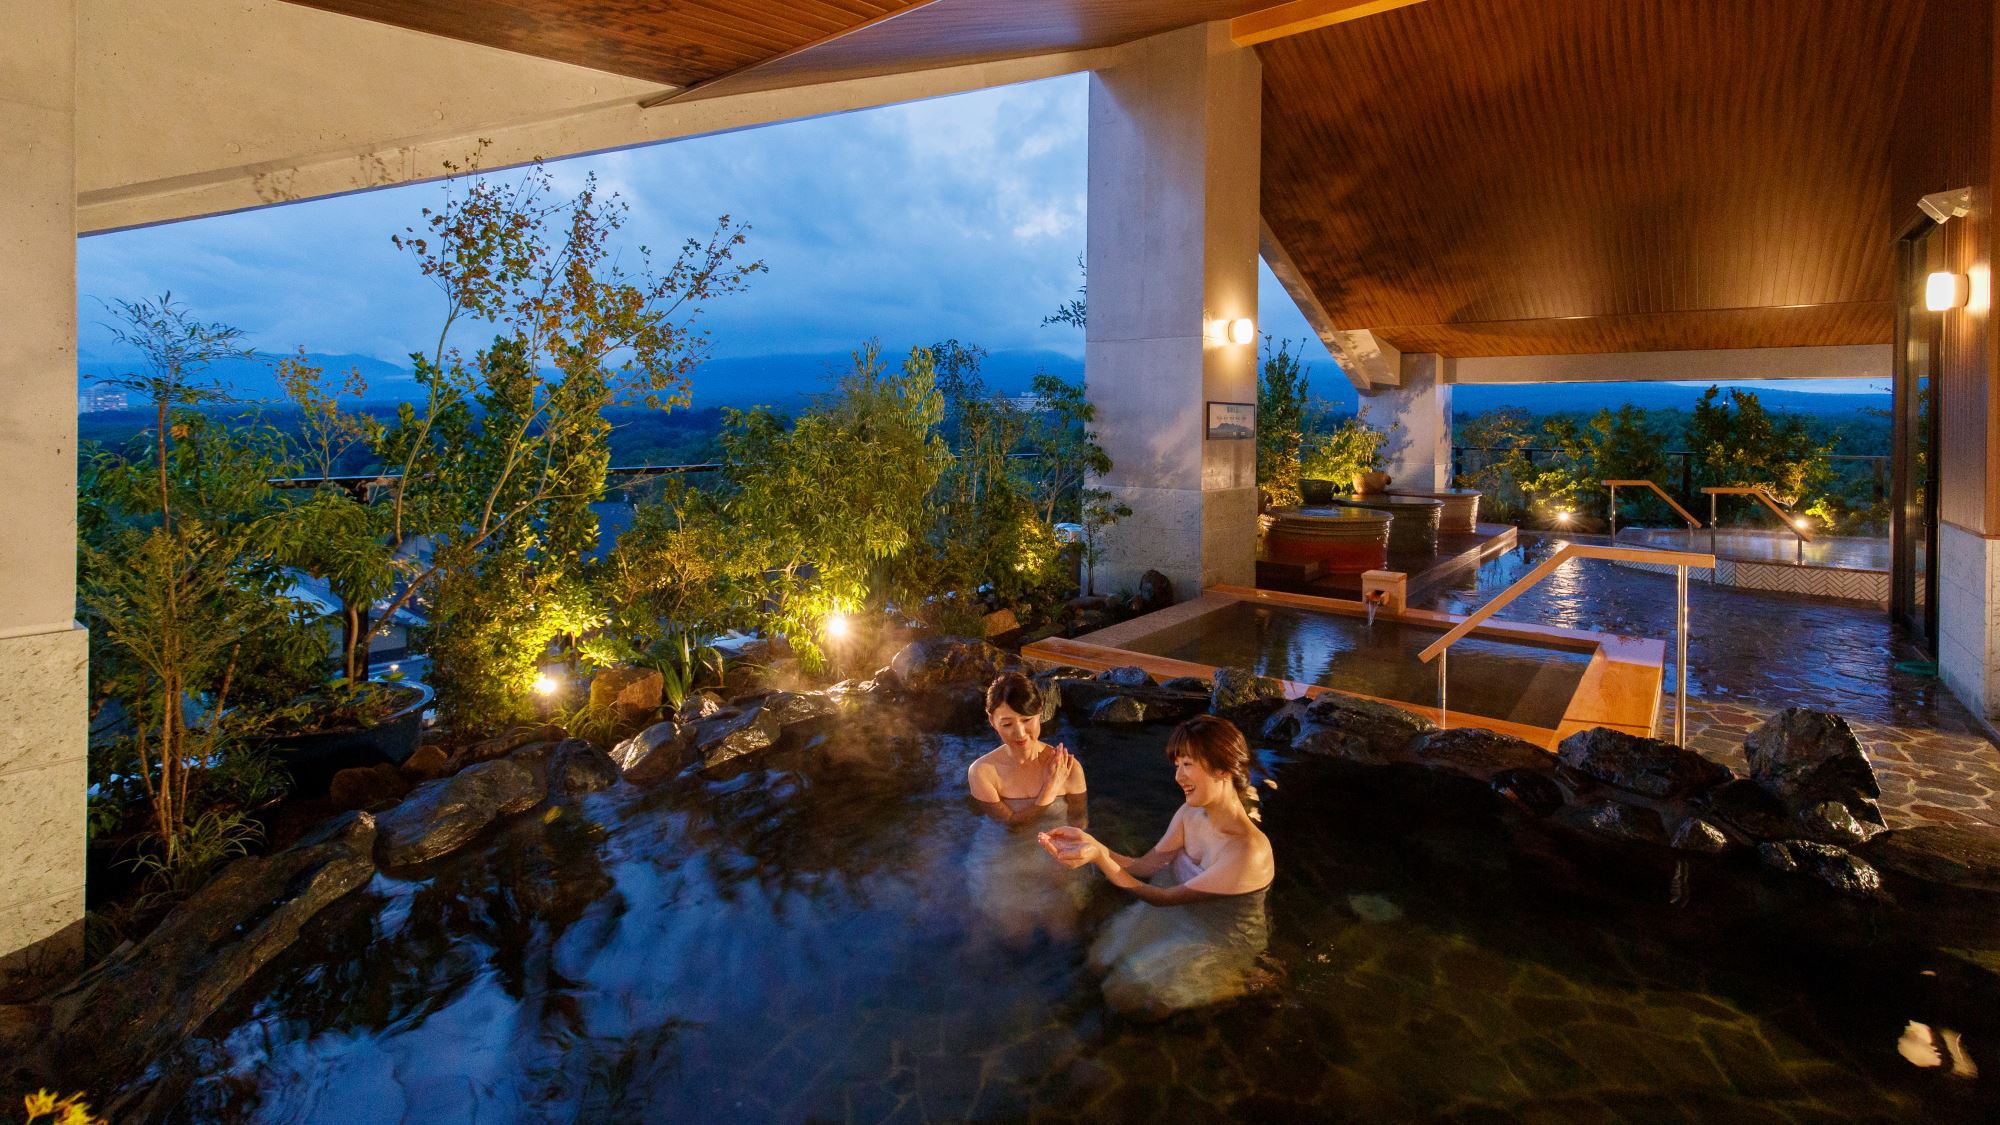 【最上階展望露天風呂】那須の自然に溶け込み、風景と調和する露天風呂